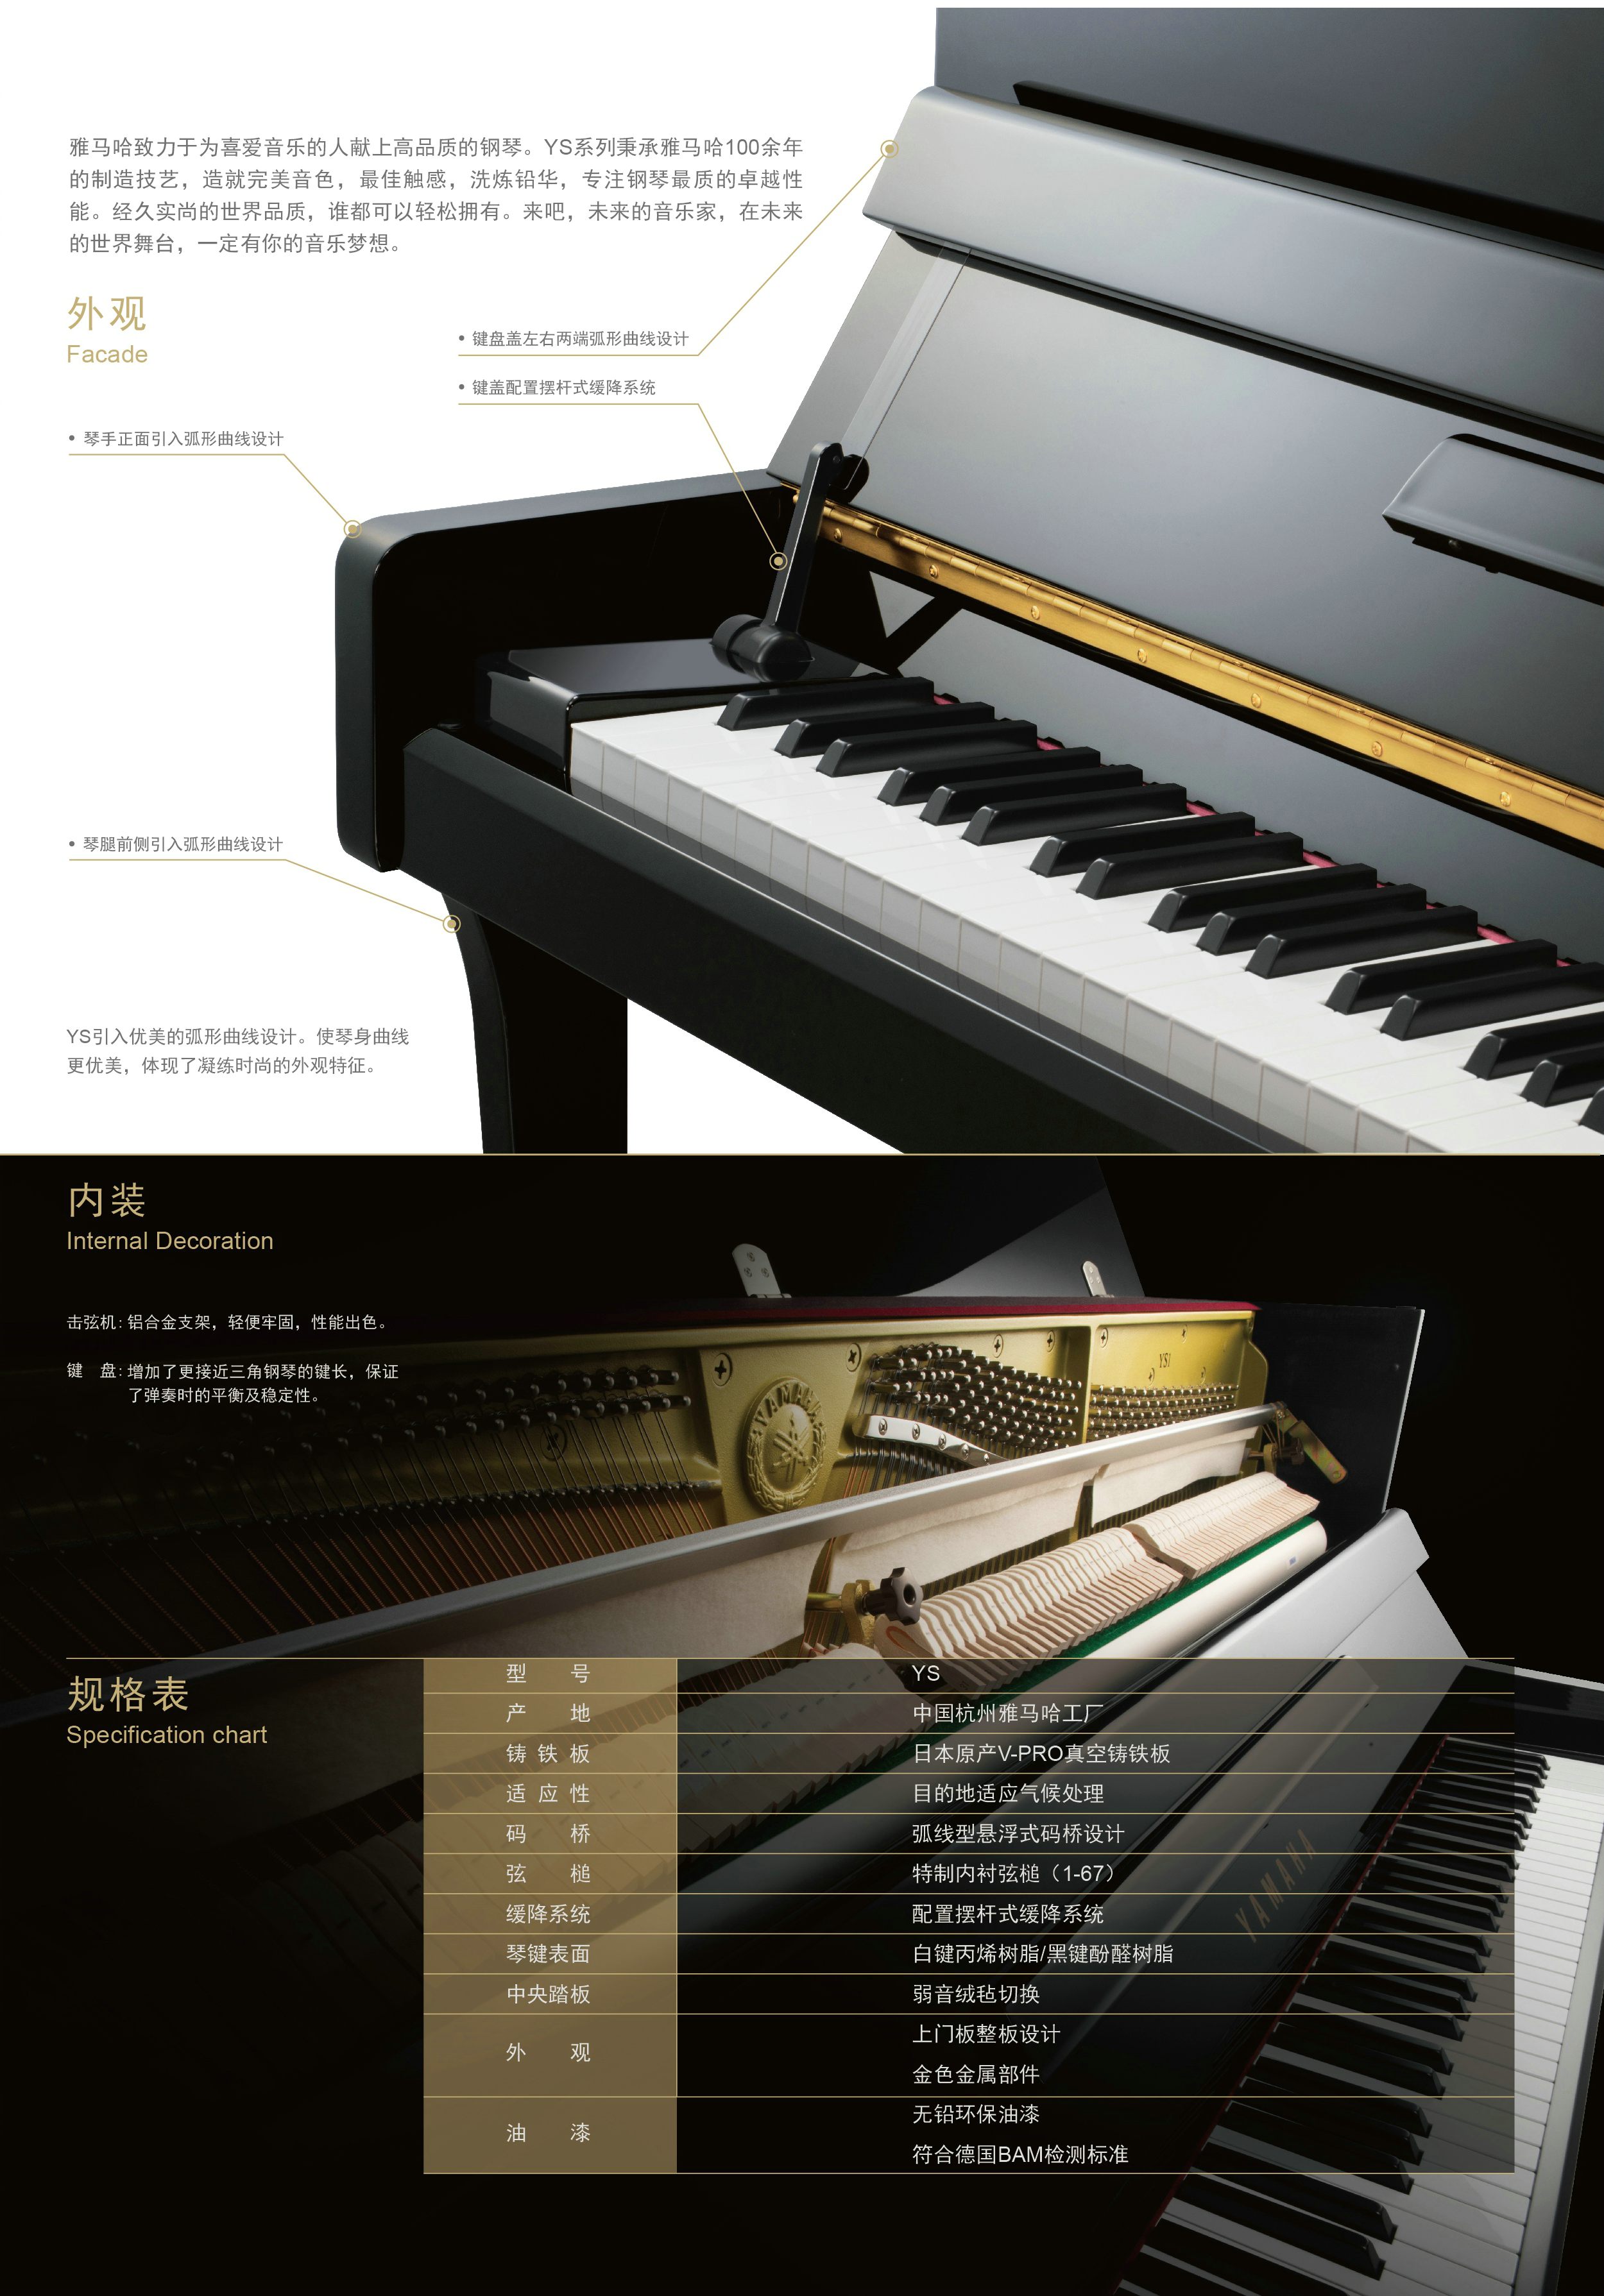 全新的雅马哈钢琴YS系列现已到来